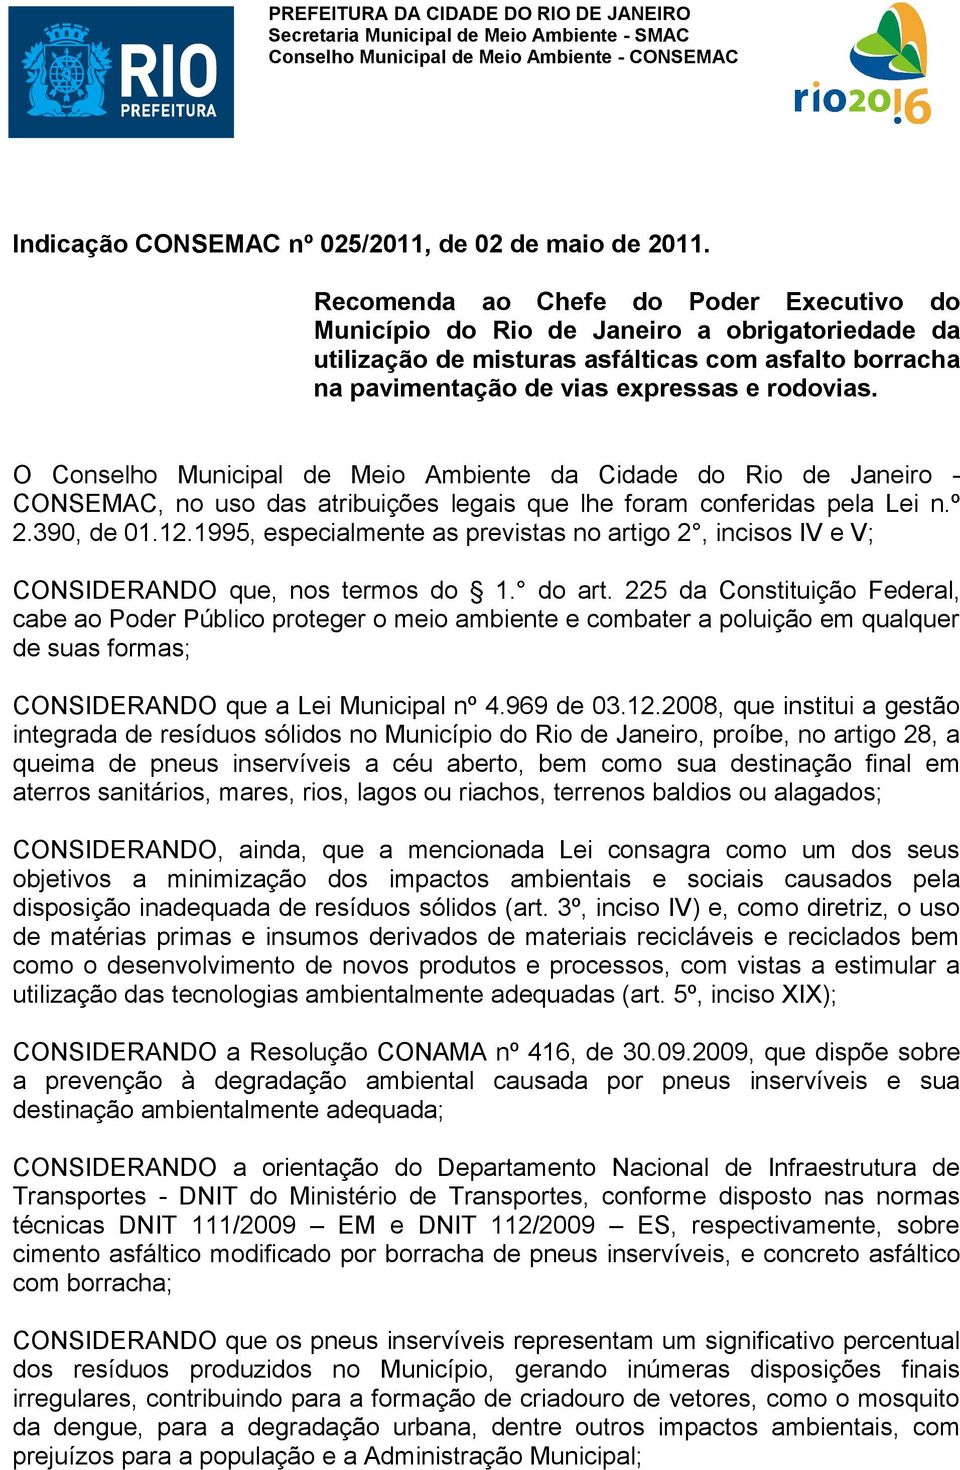 O Conselho Municipal de Meio Ambiente da Cidade do Rio de Janeiro - CONSEMAC, no uso das atribuições legais que lhe foram conferidas pela Lei n.º 2.390, de 01.12.